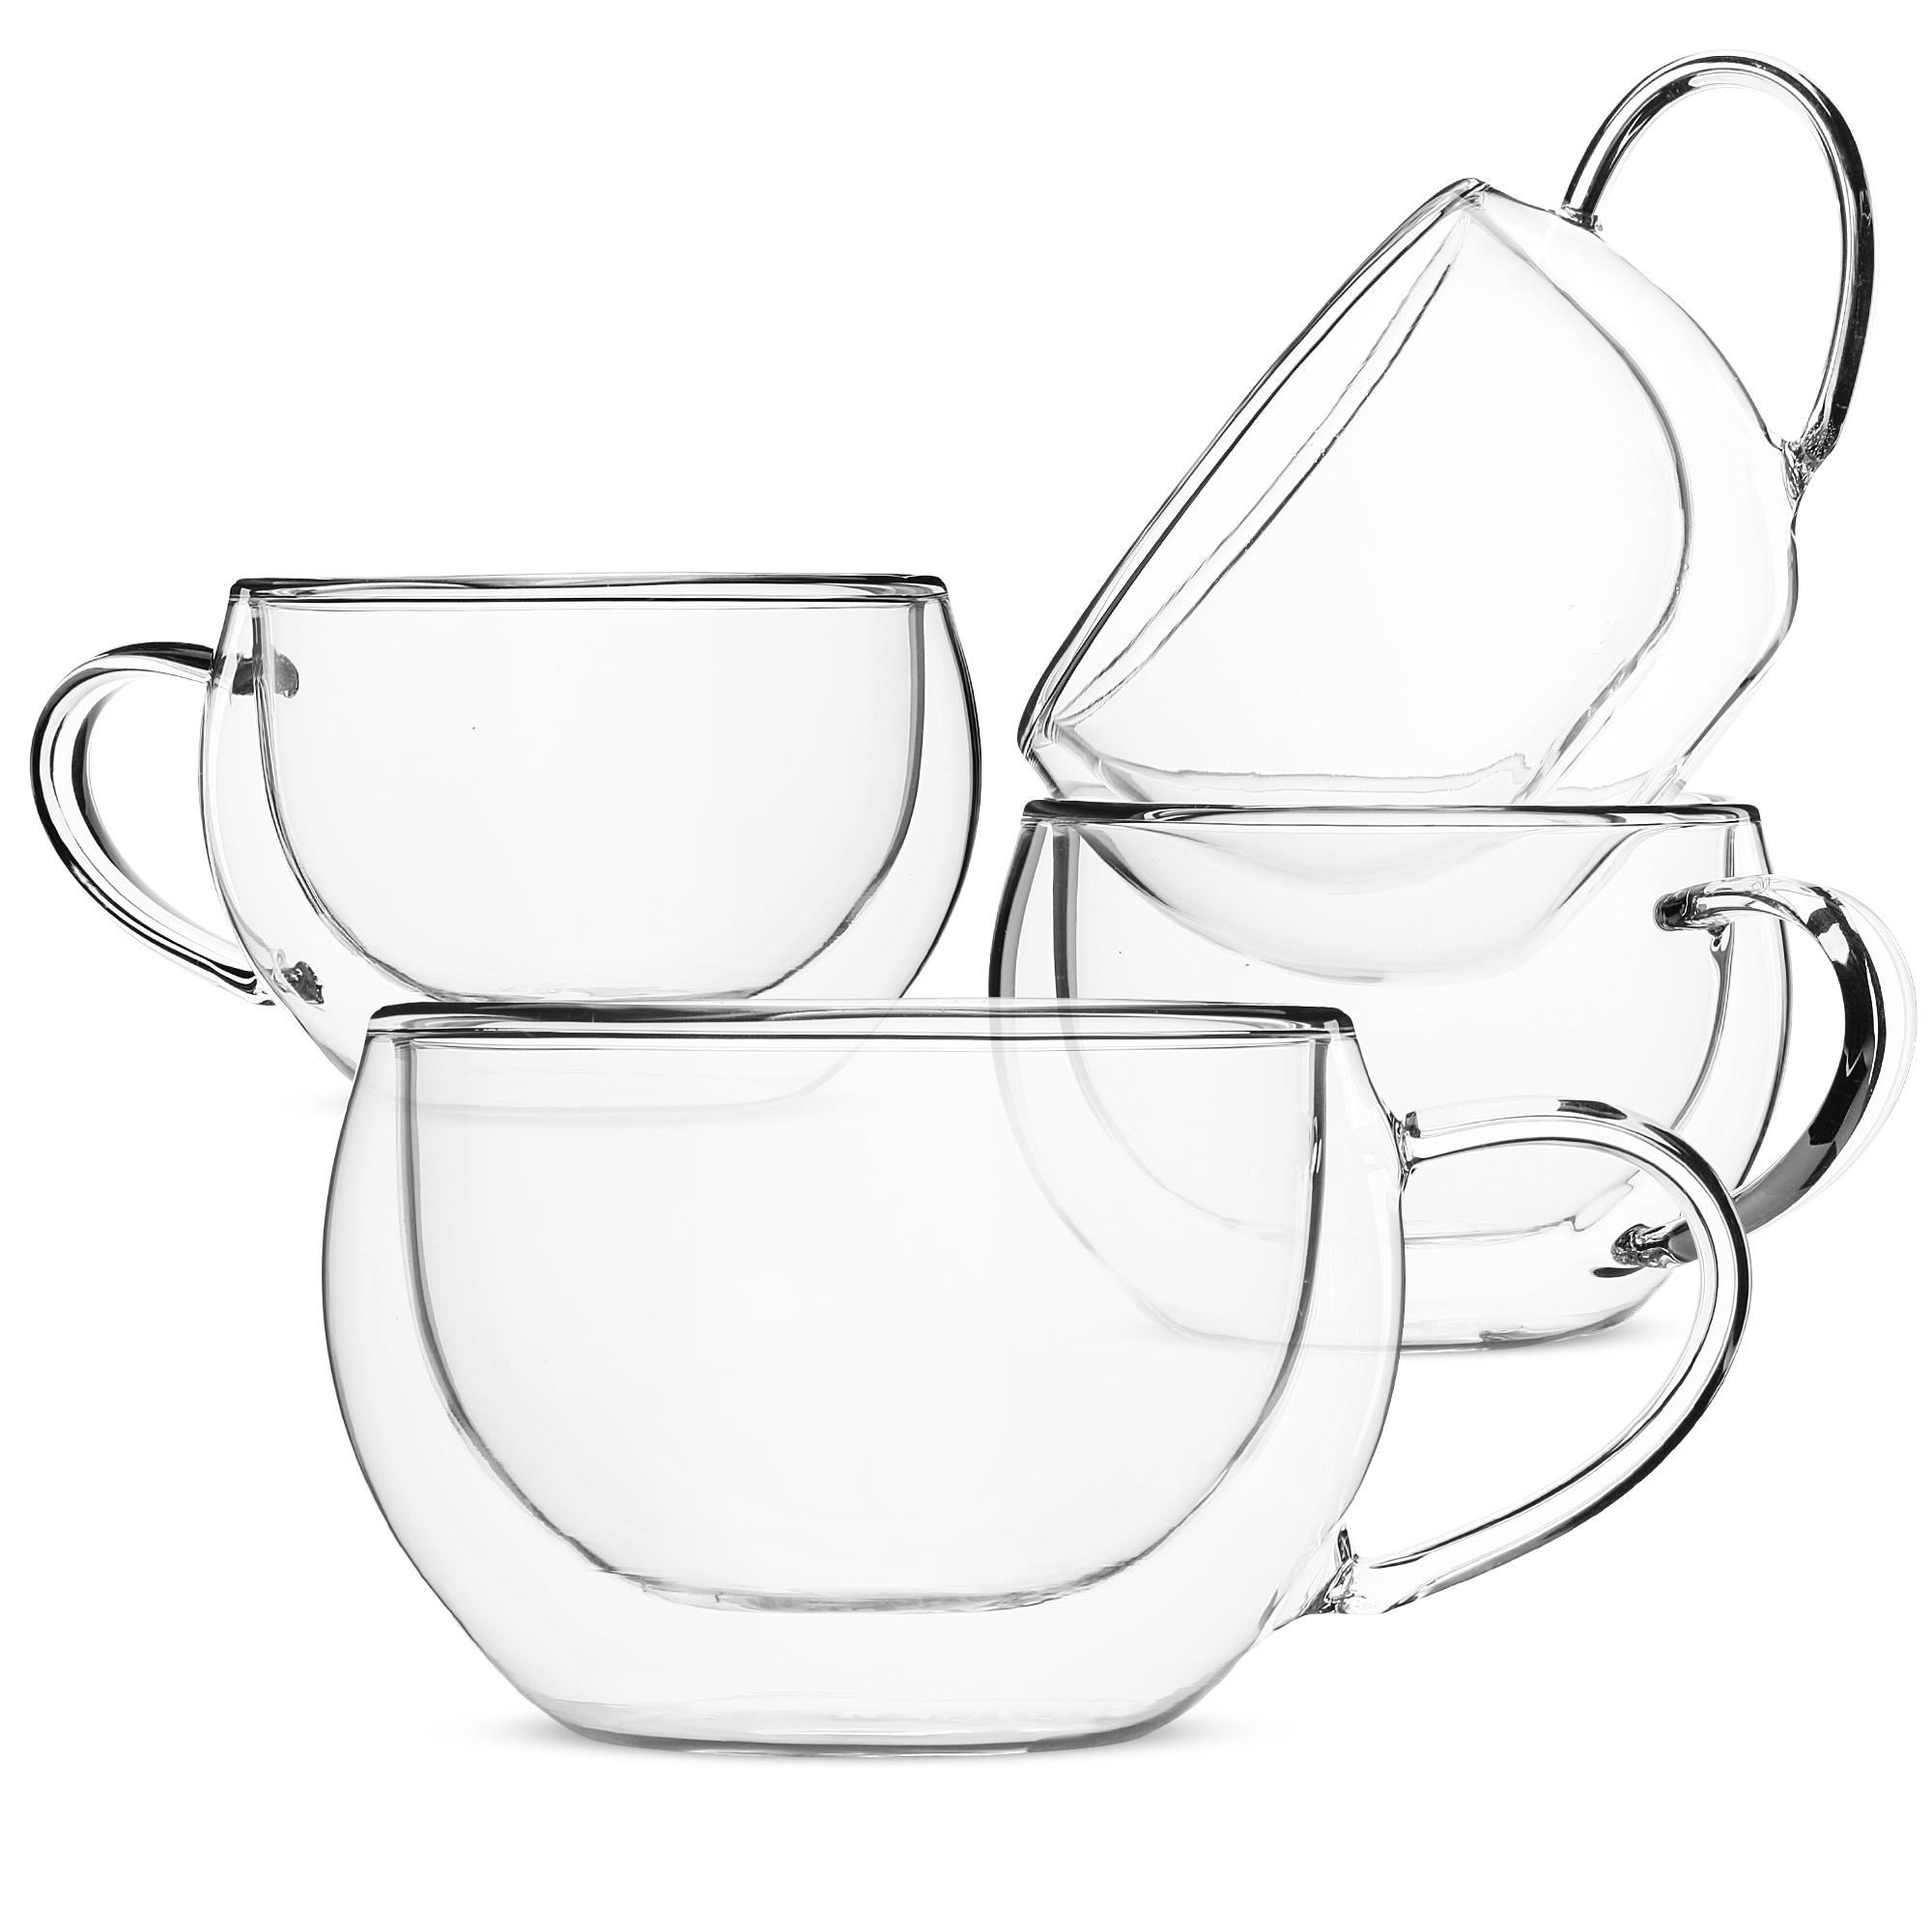 BTäT- Insulated Coffee Mug (16oz, 500ml) – BTAT